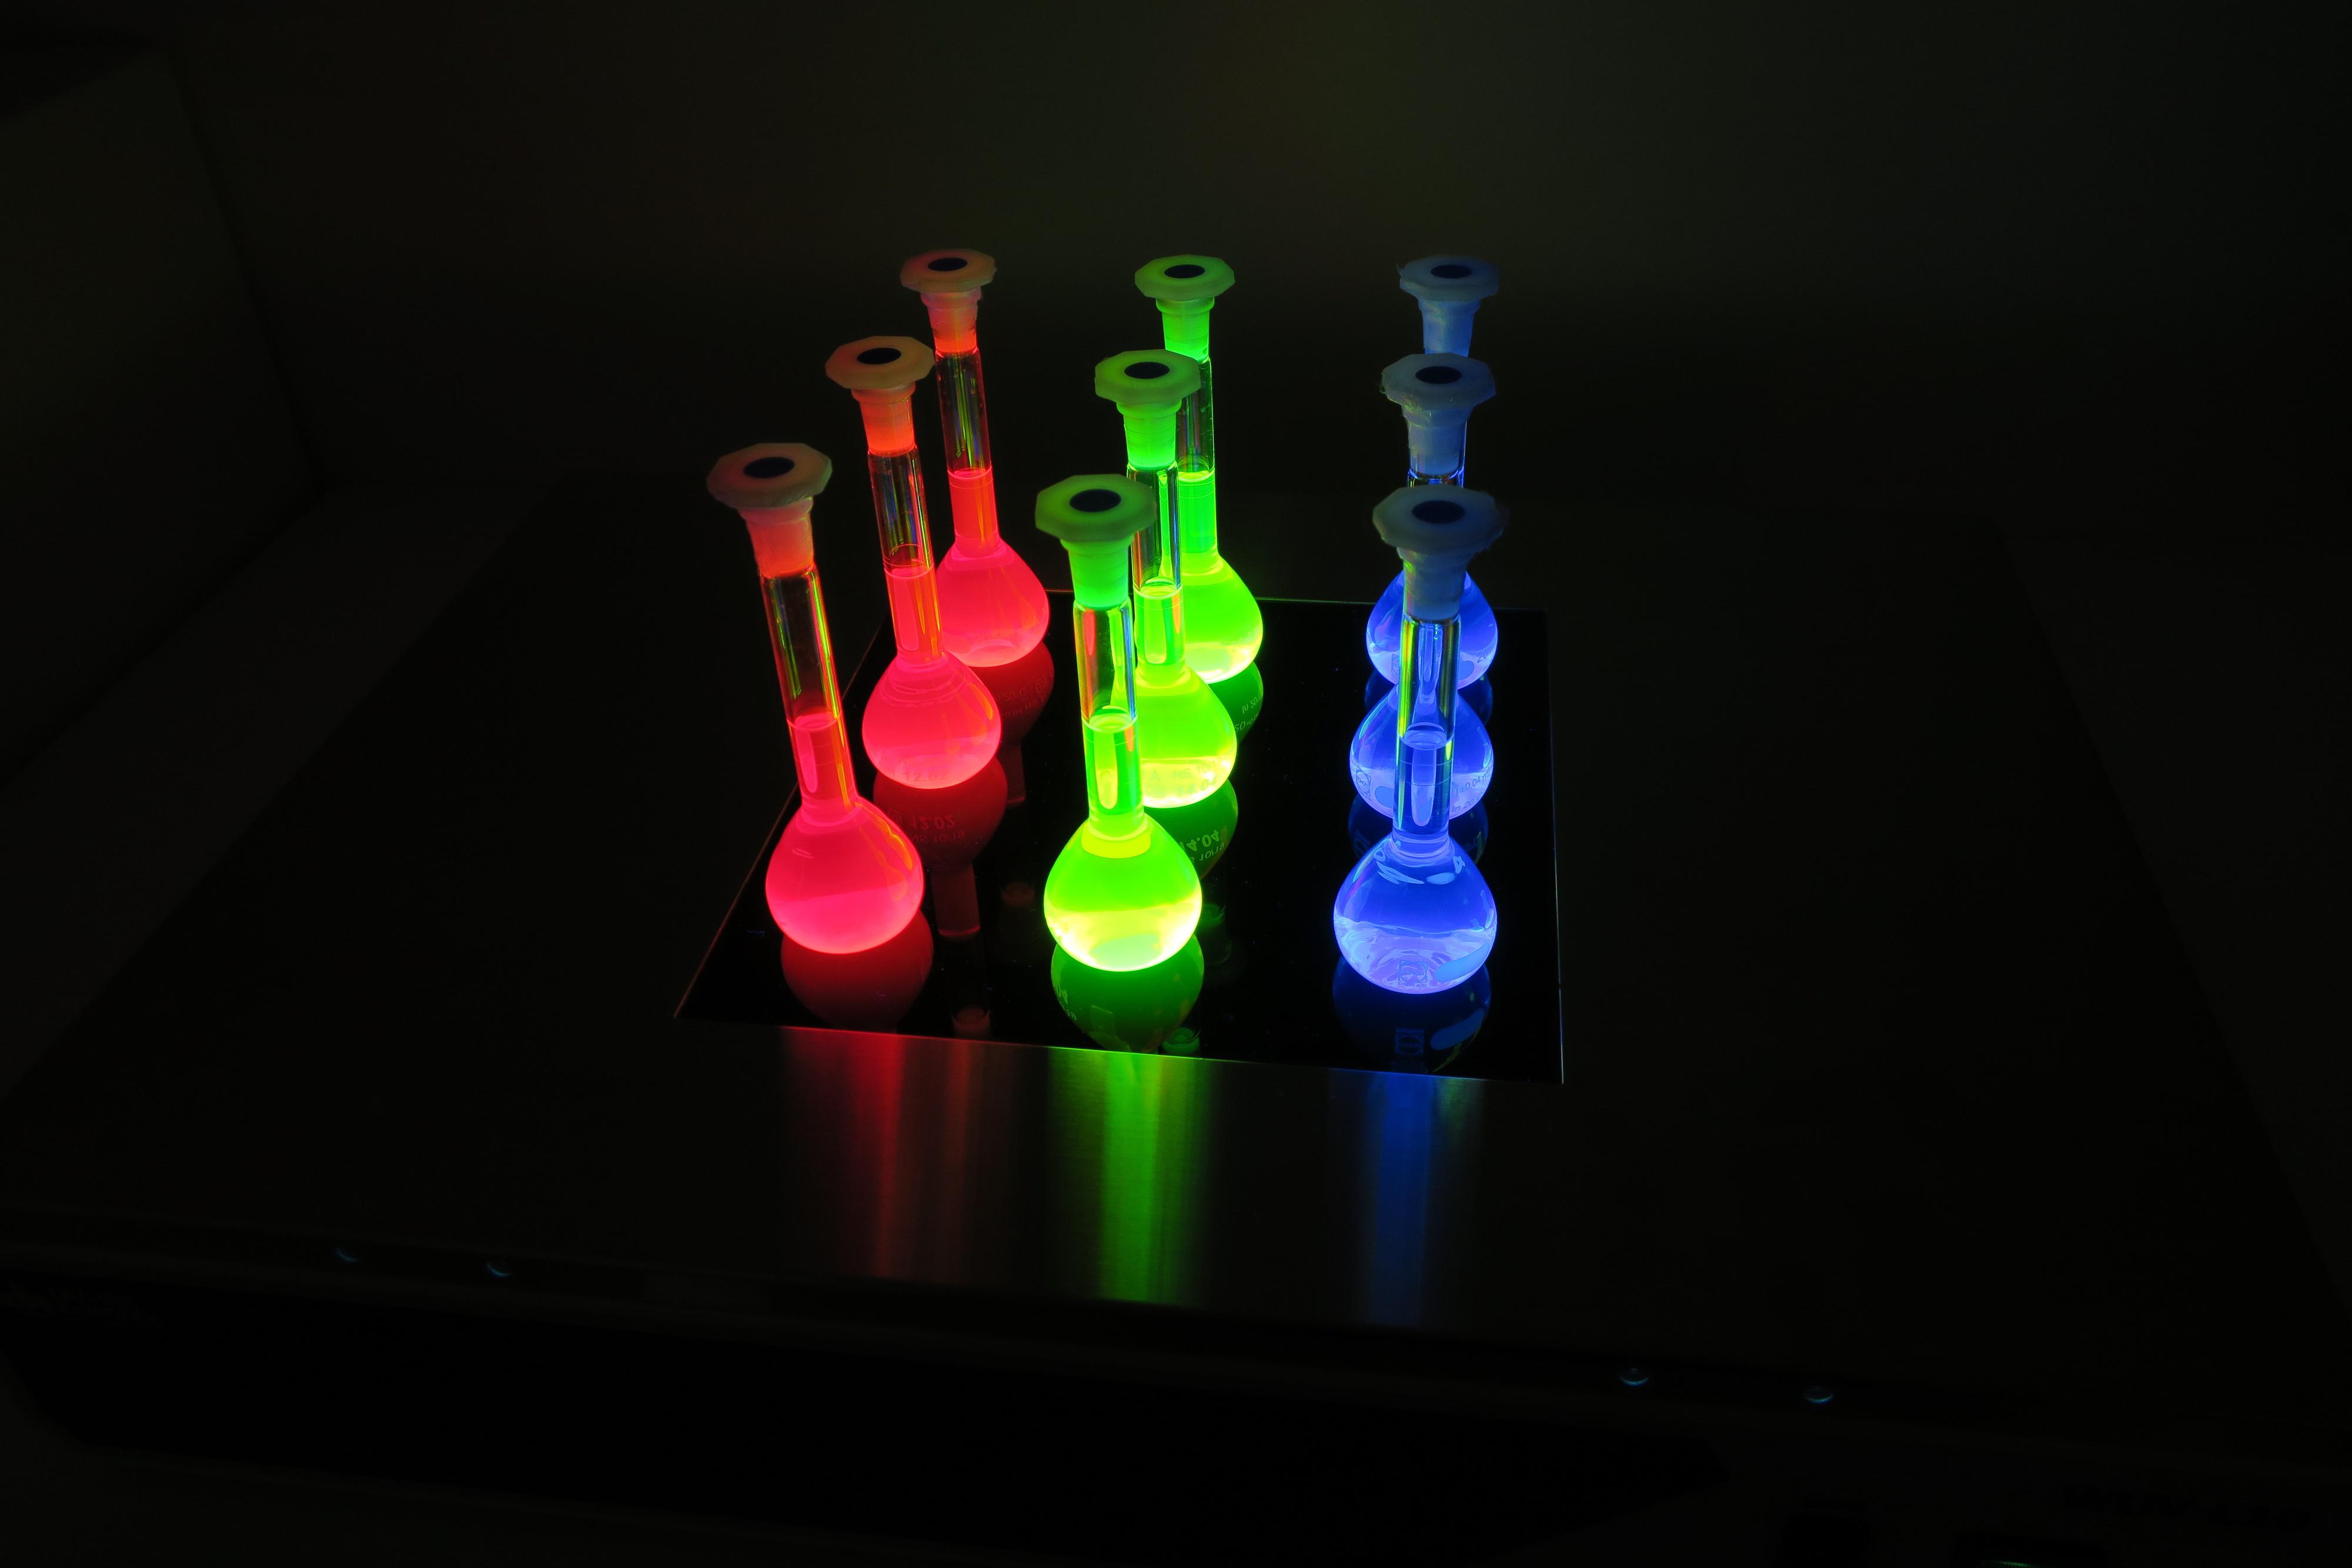 Her ser du flasker fylt med forskjellige størrelser kvanteprikker. Tilføy litt lys og fargene våkner til liv.